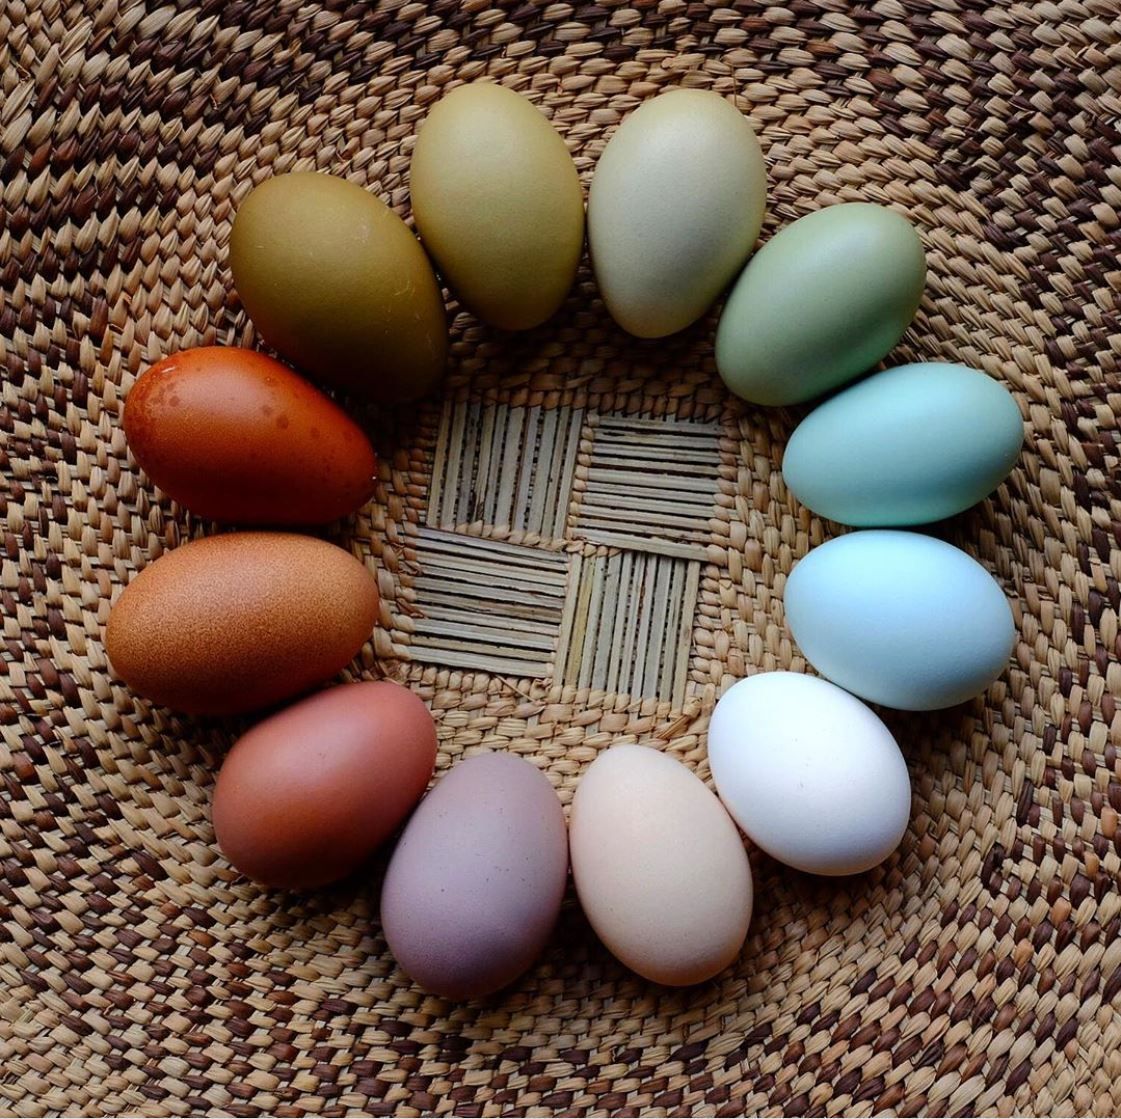 Huevos de colores de gallinas camperas sobre cesta de ratán